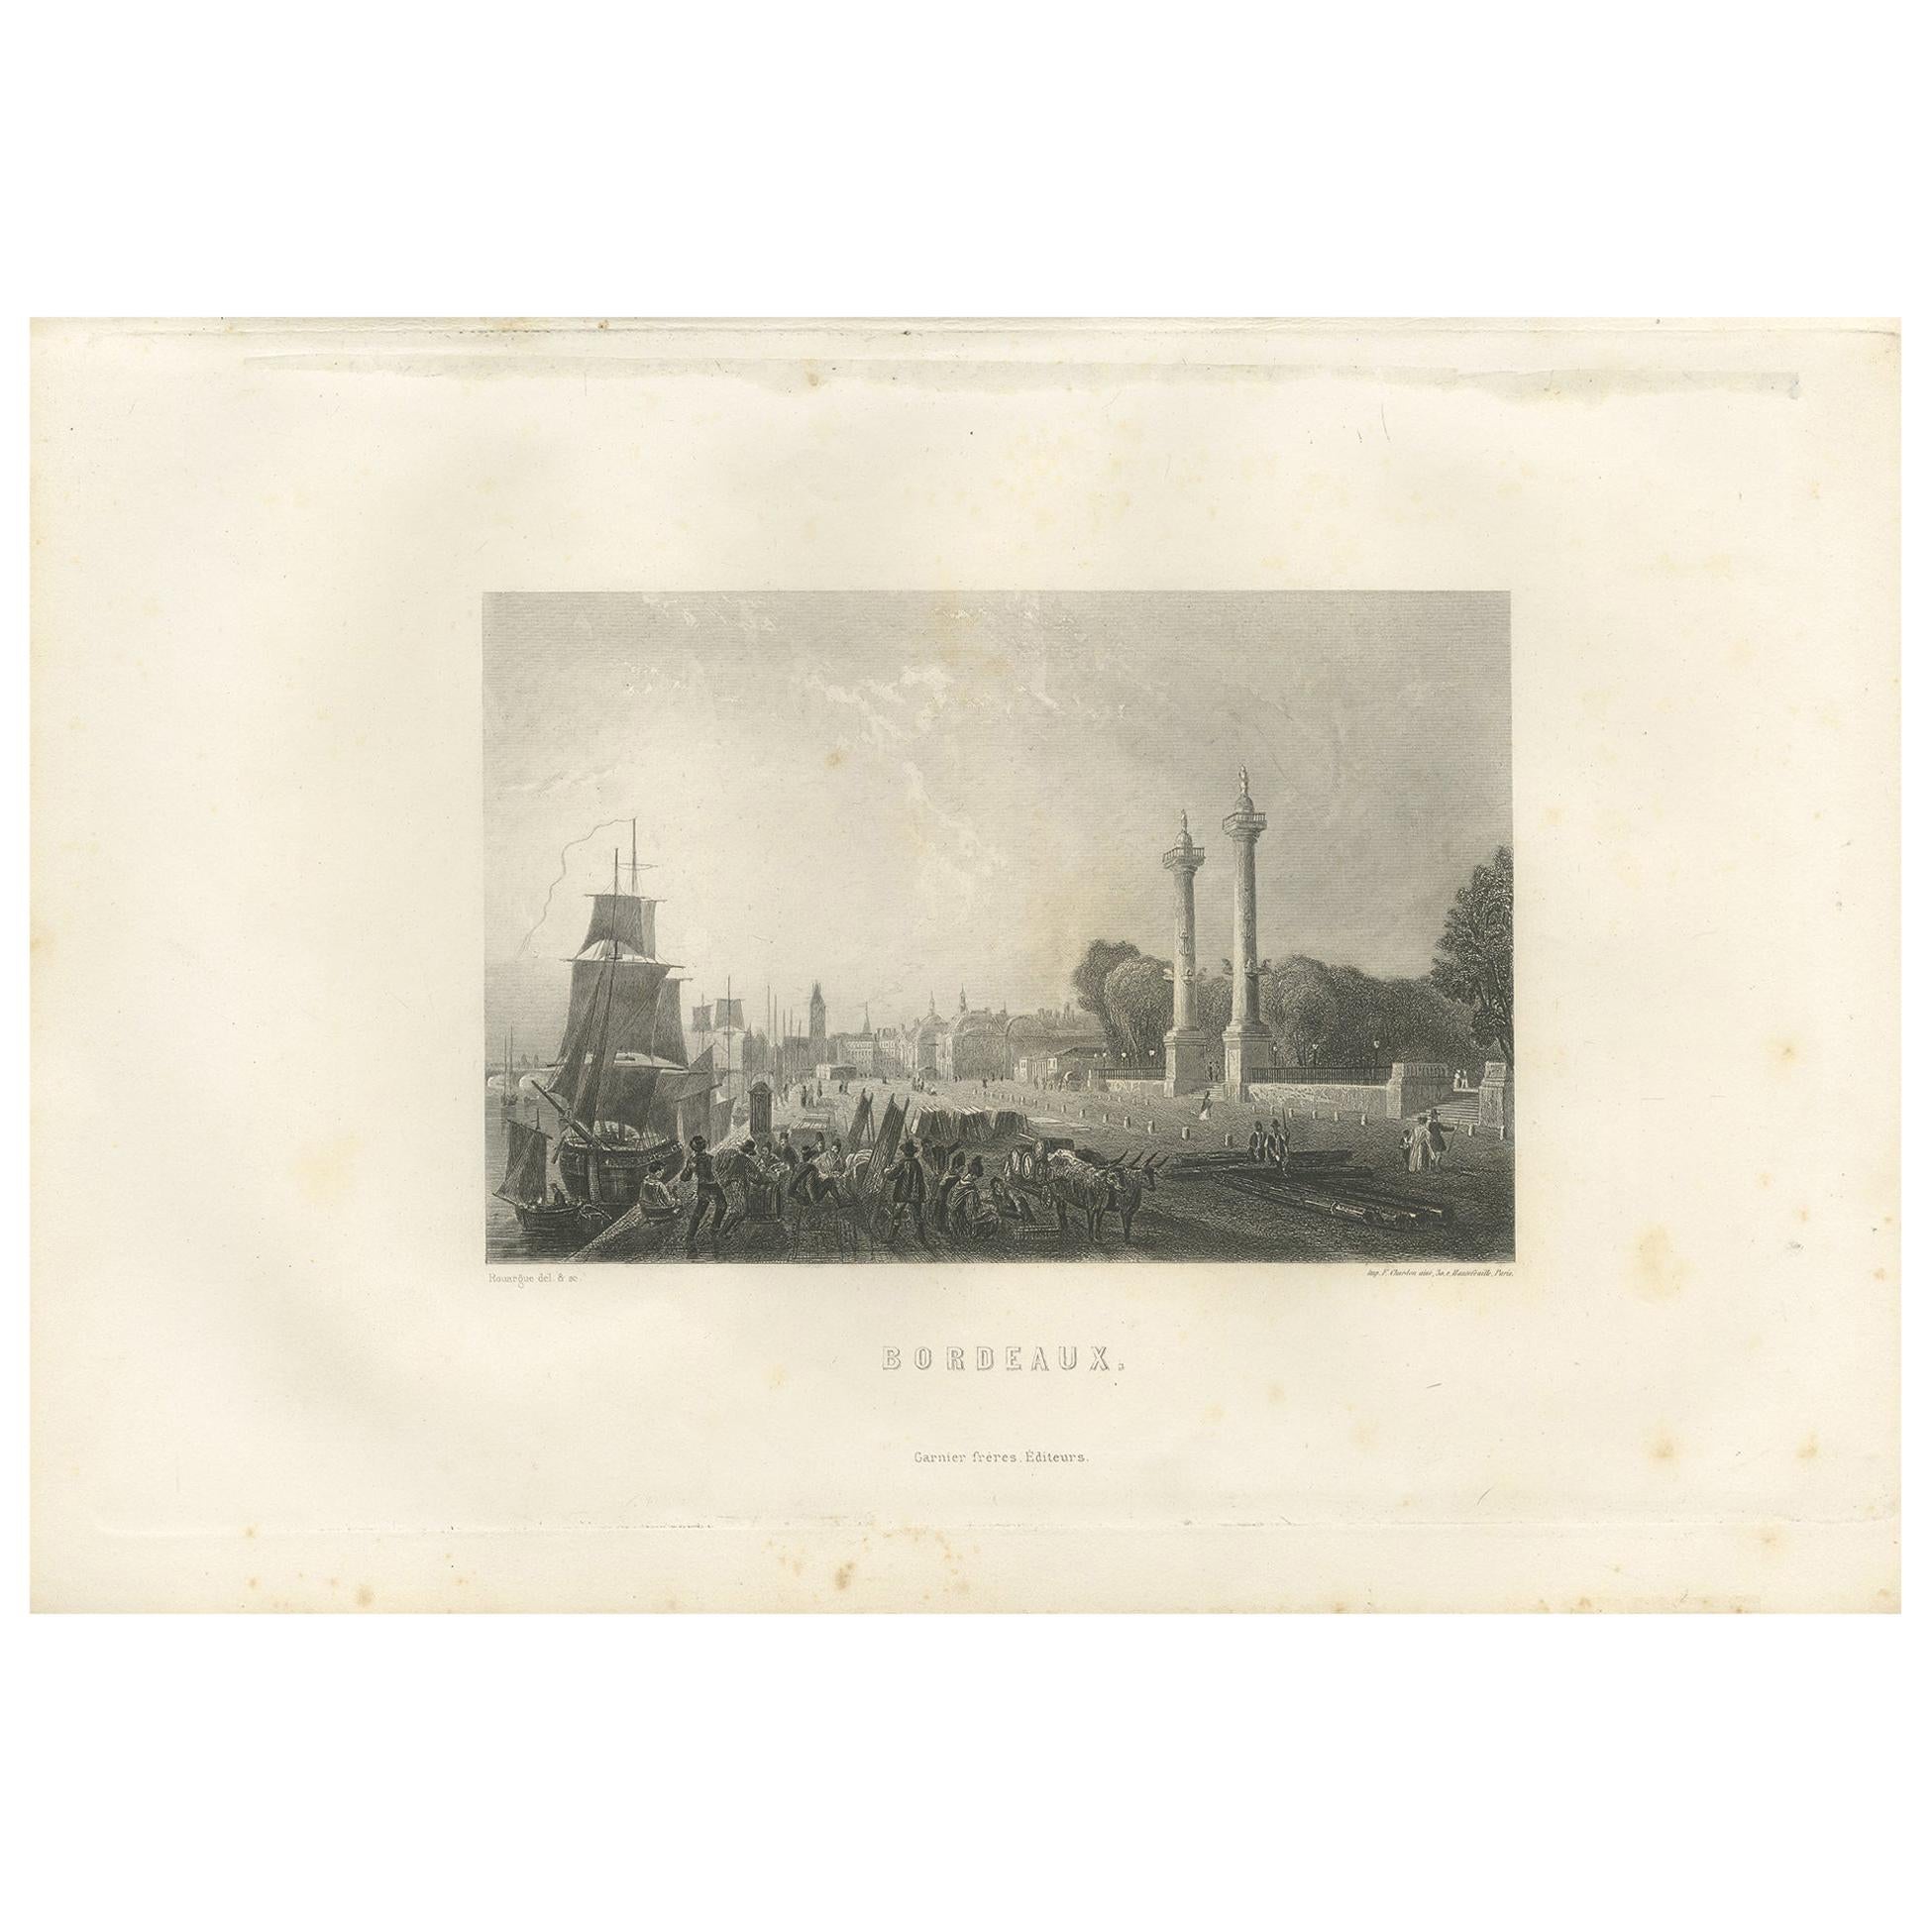 Antique Print of the City of Bordeaux by Grégoire '1883' For Sale